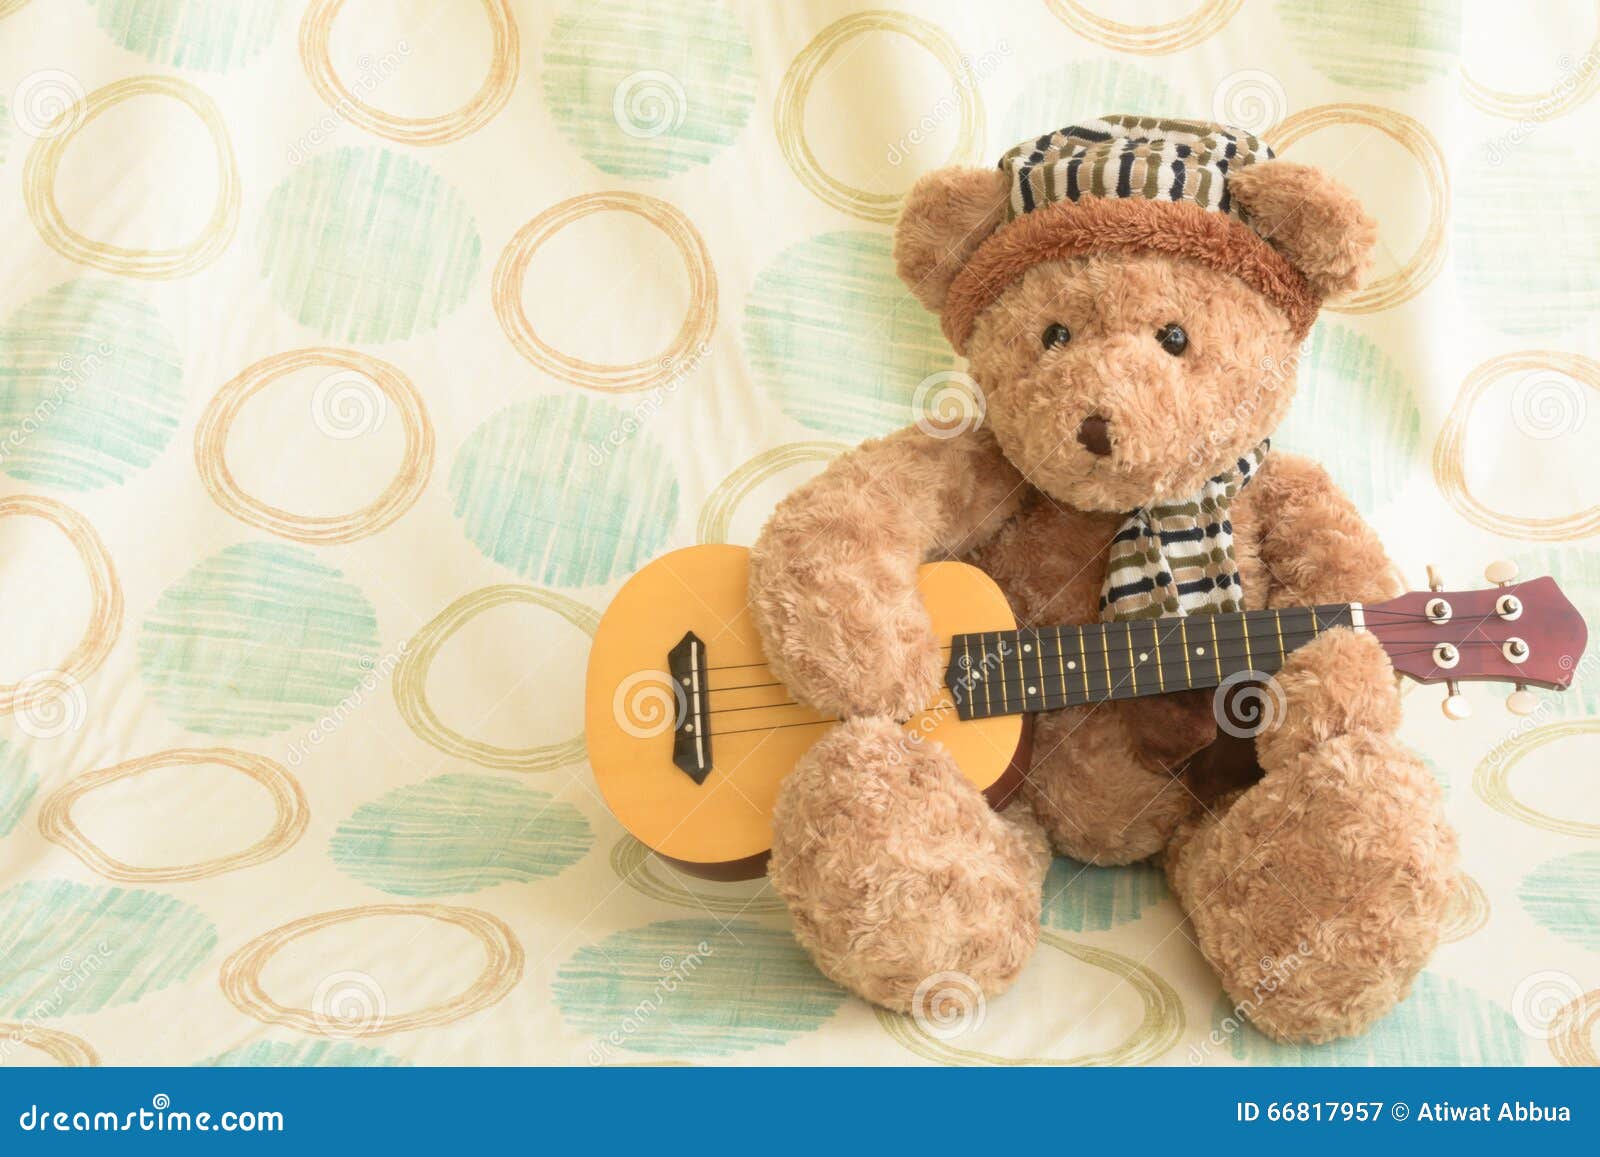 彈吉他的可愛小熊, 動物, 吉他, 樂器素材圖案，PSD和PNG圖片免費下載